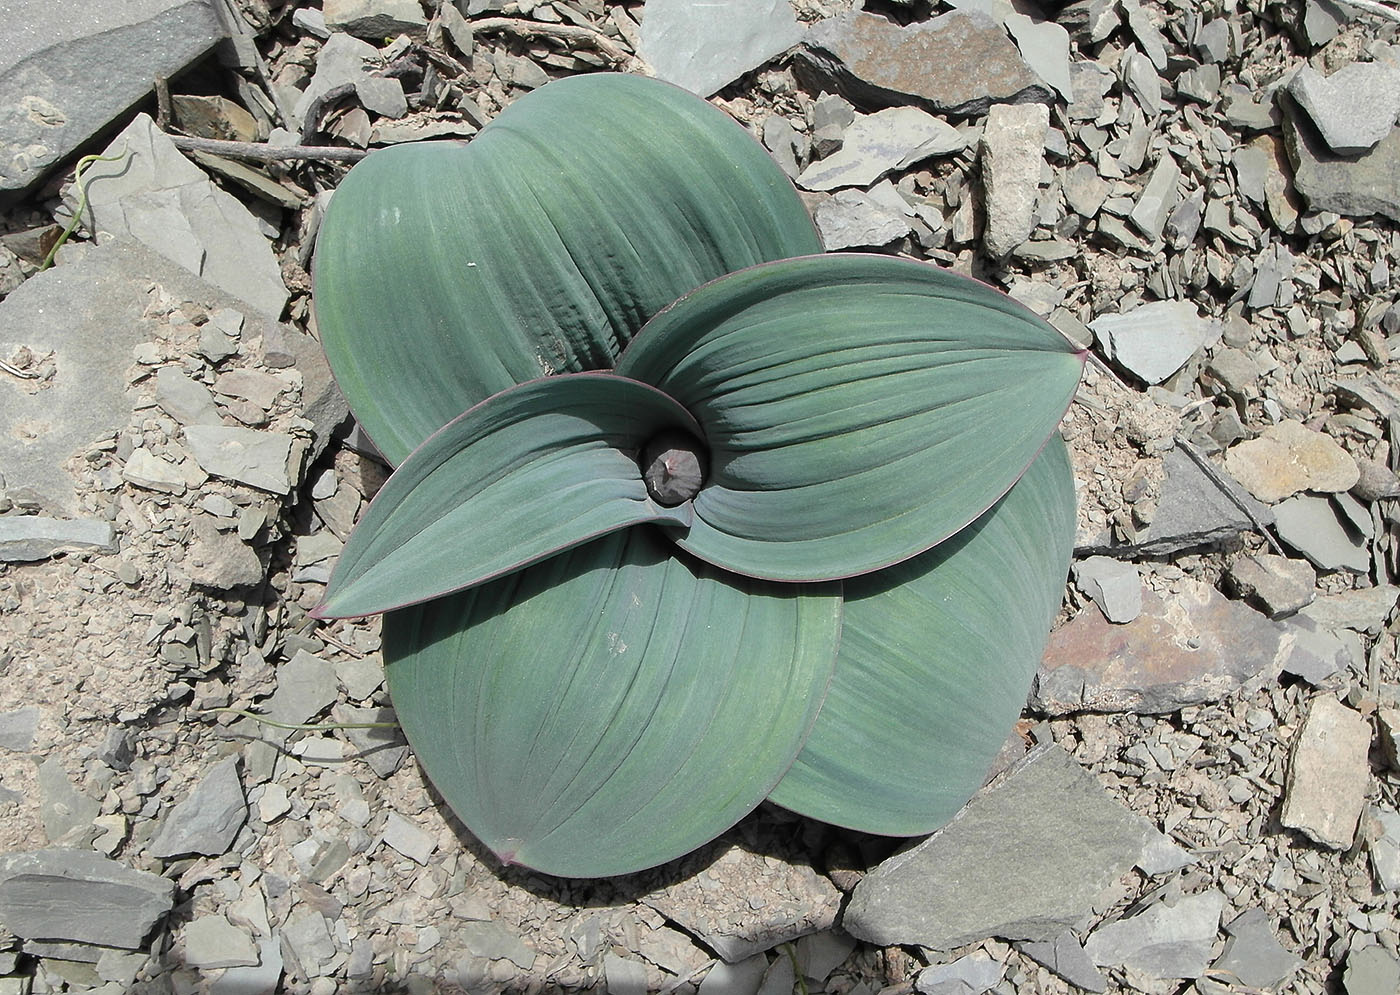 Image of Allium karataviense specimen.